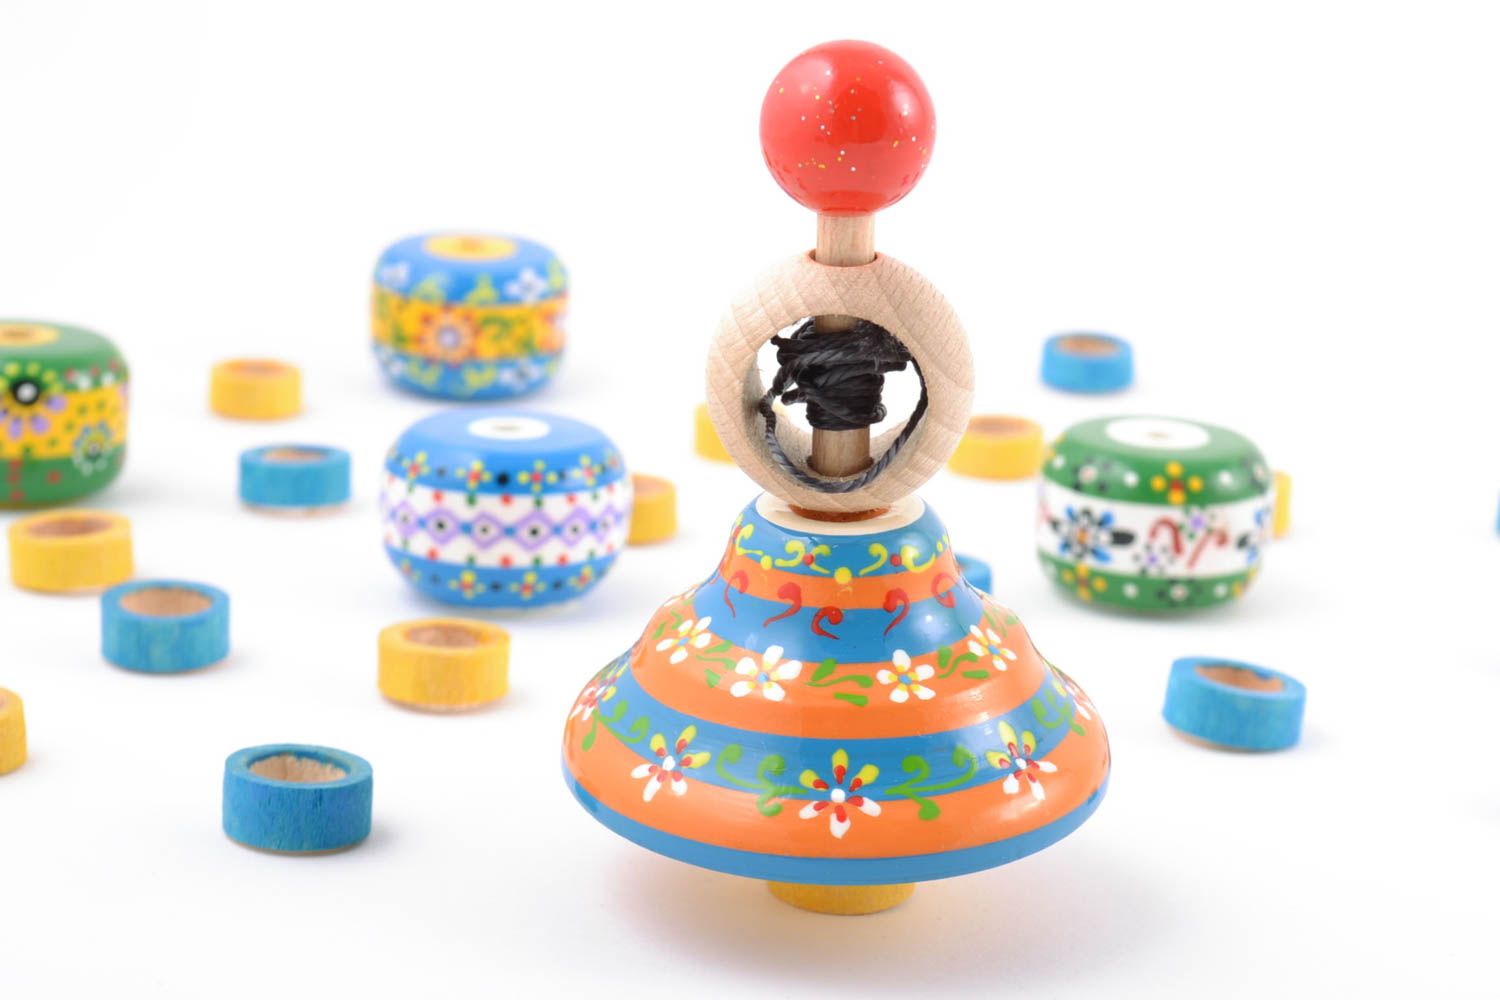 Handmade Kreisel Spielzeug aus Holz mit Ökofarben bemalt gestreift foto 1